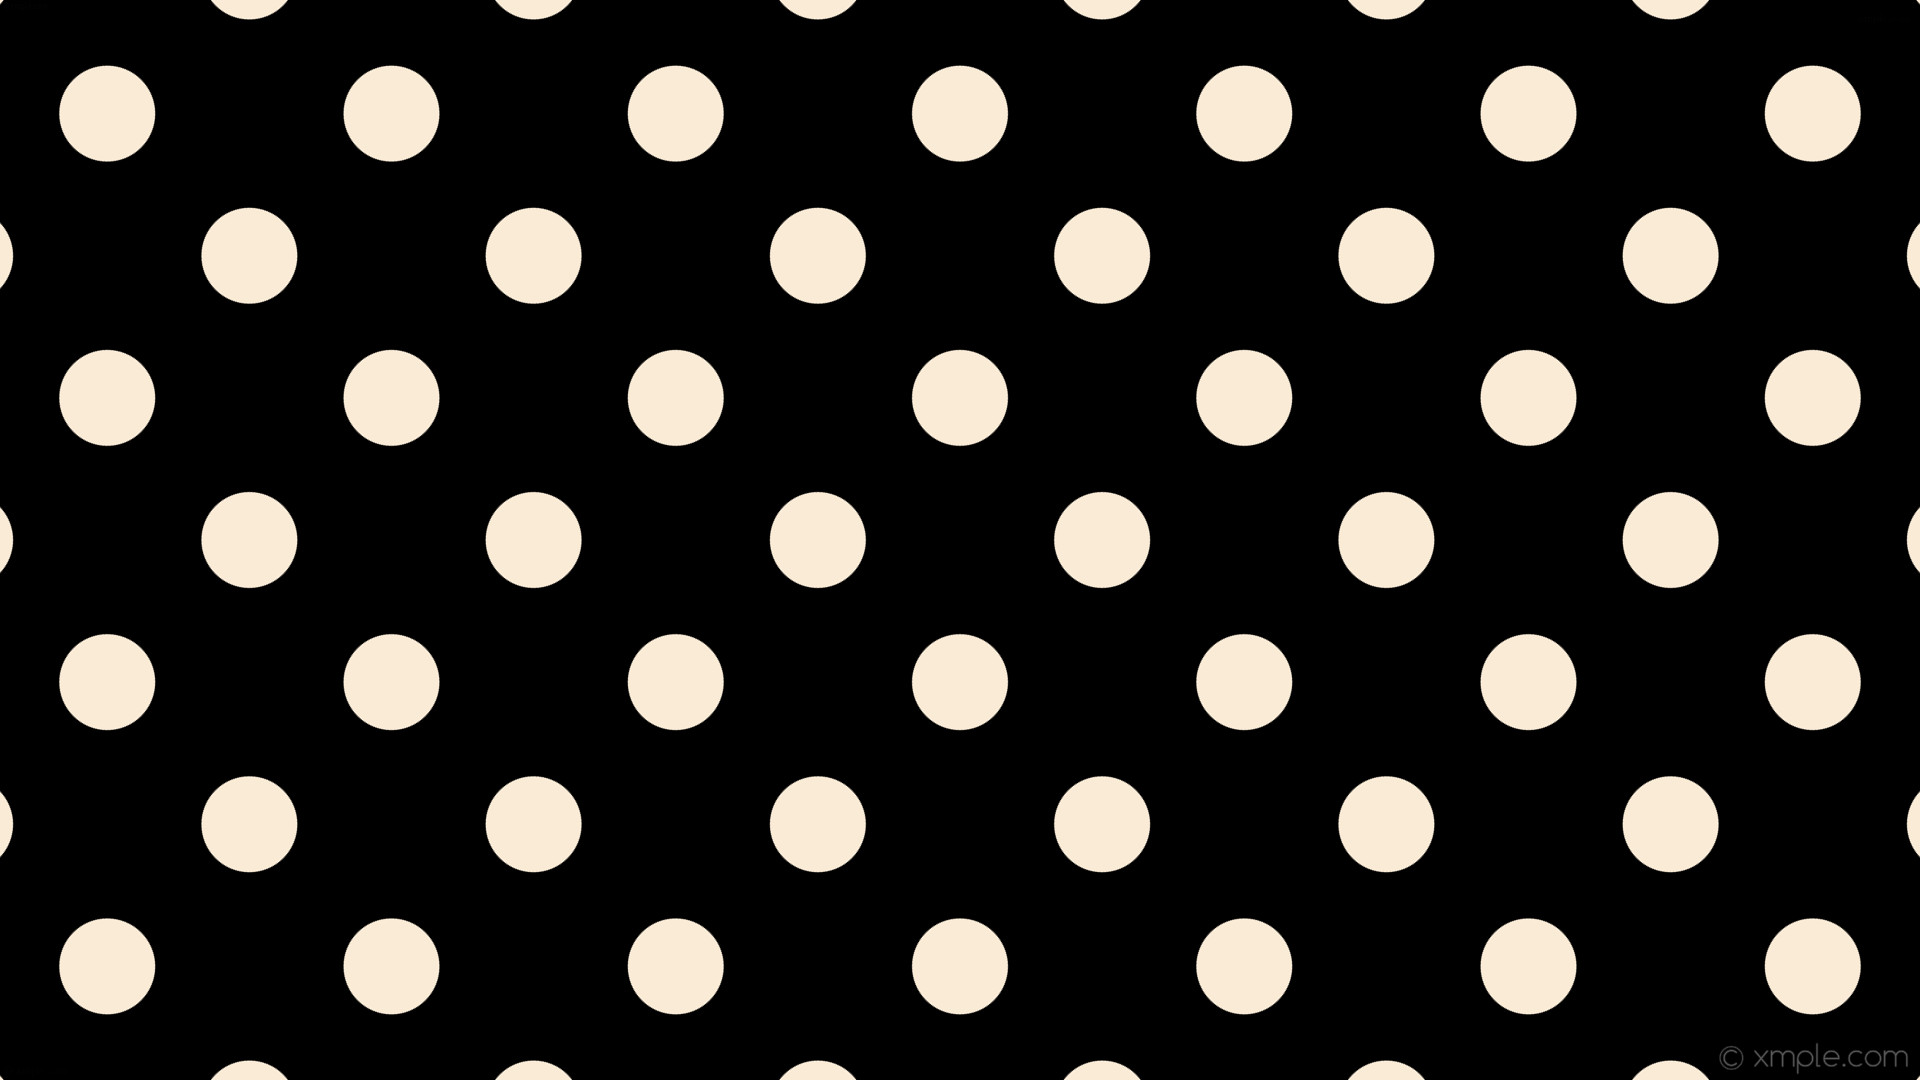 1920x1080 wallpaper dots white spots polka black antique white #000000 #faebd7 315Â°  96px 201px